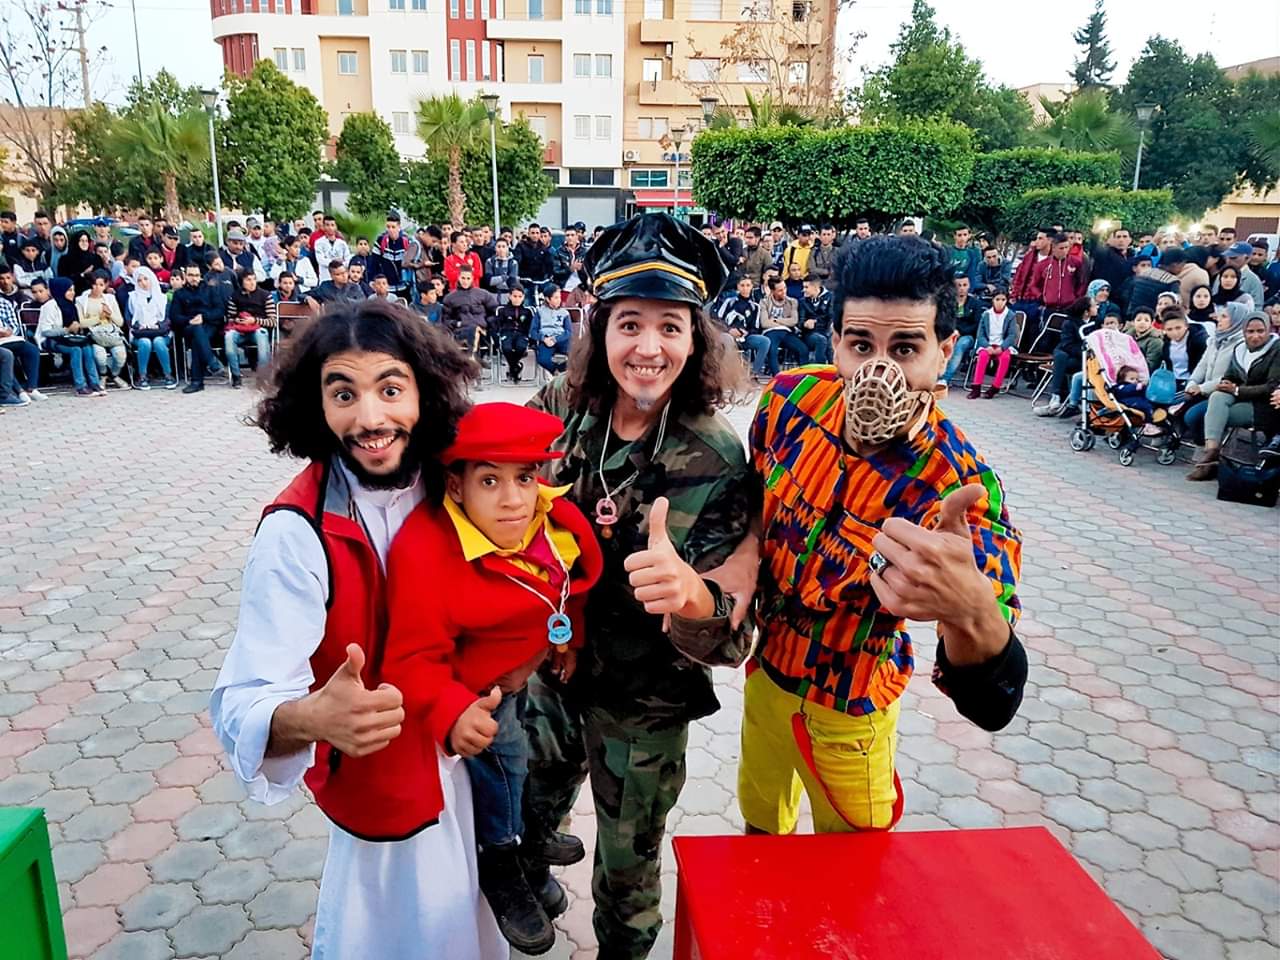 فرقة مسرح النون والفنون بالفقيه بن صالح تمثل المغرب في مسرح الشارع بتونس بمسرحية ” كوالة بنادم “